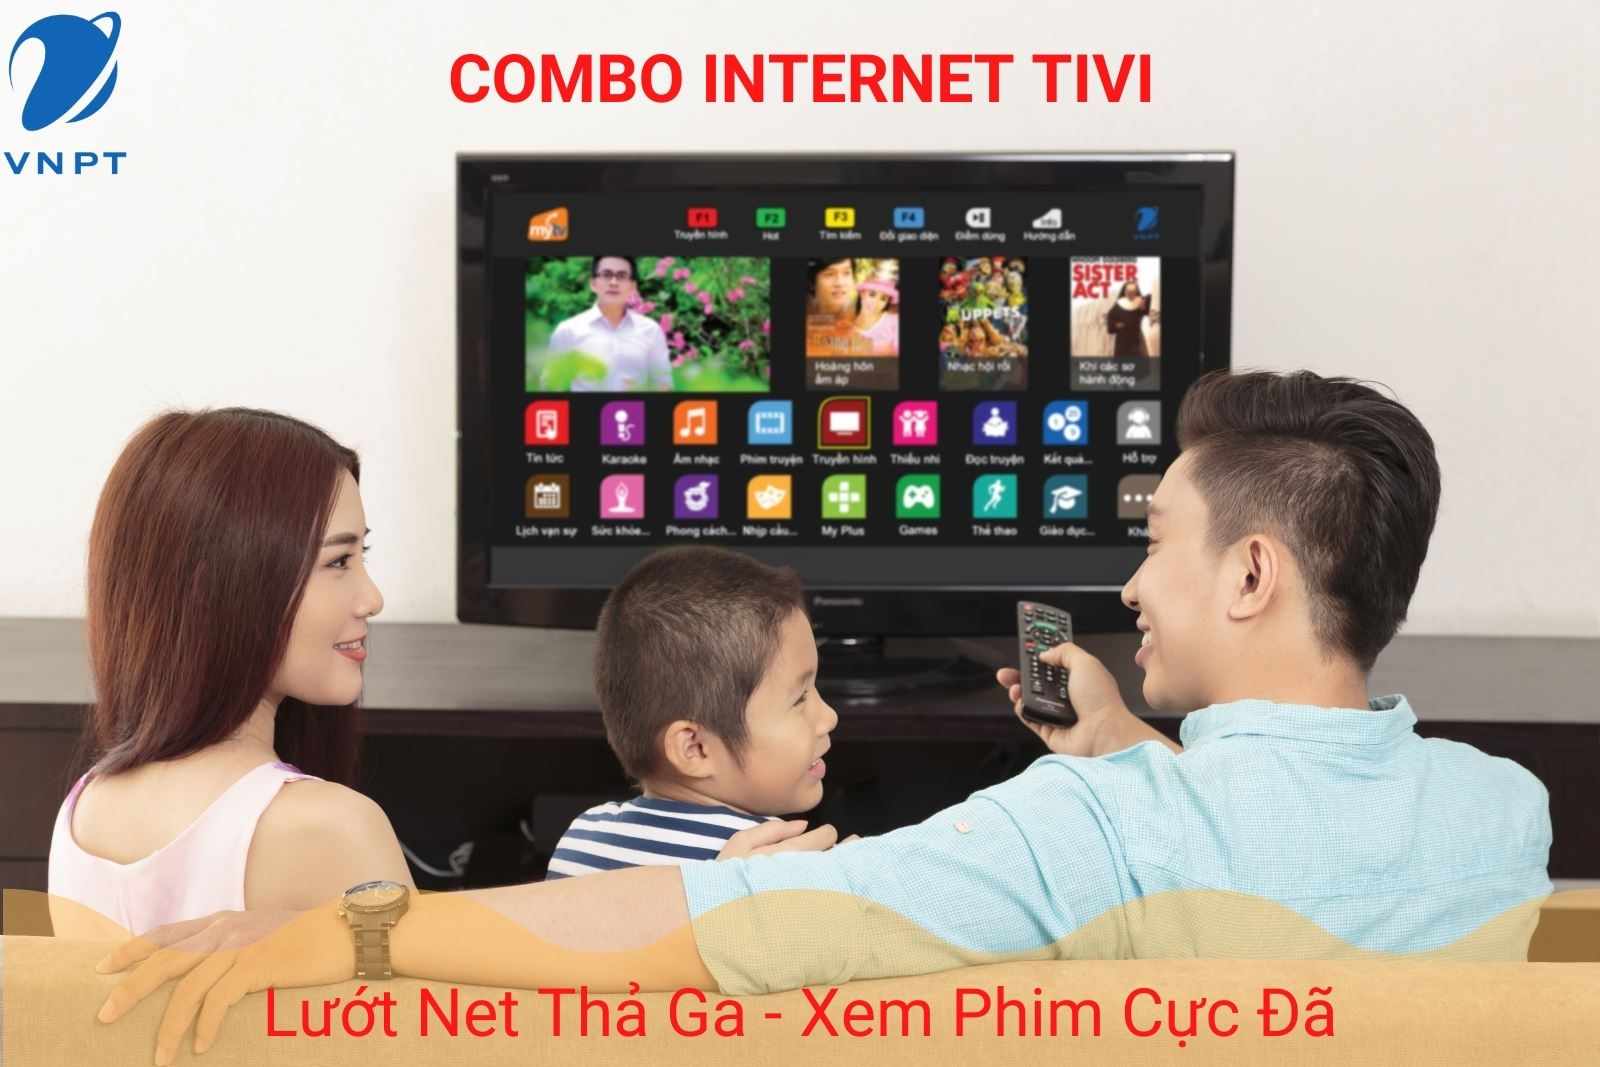 Gói cước bombo Internet Truyền hình VNPT - Home TV giá chỉ từ 140k/tháng